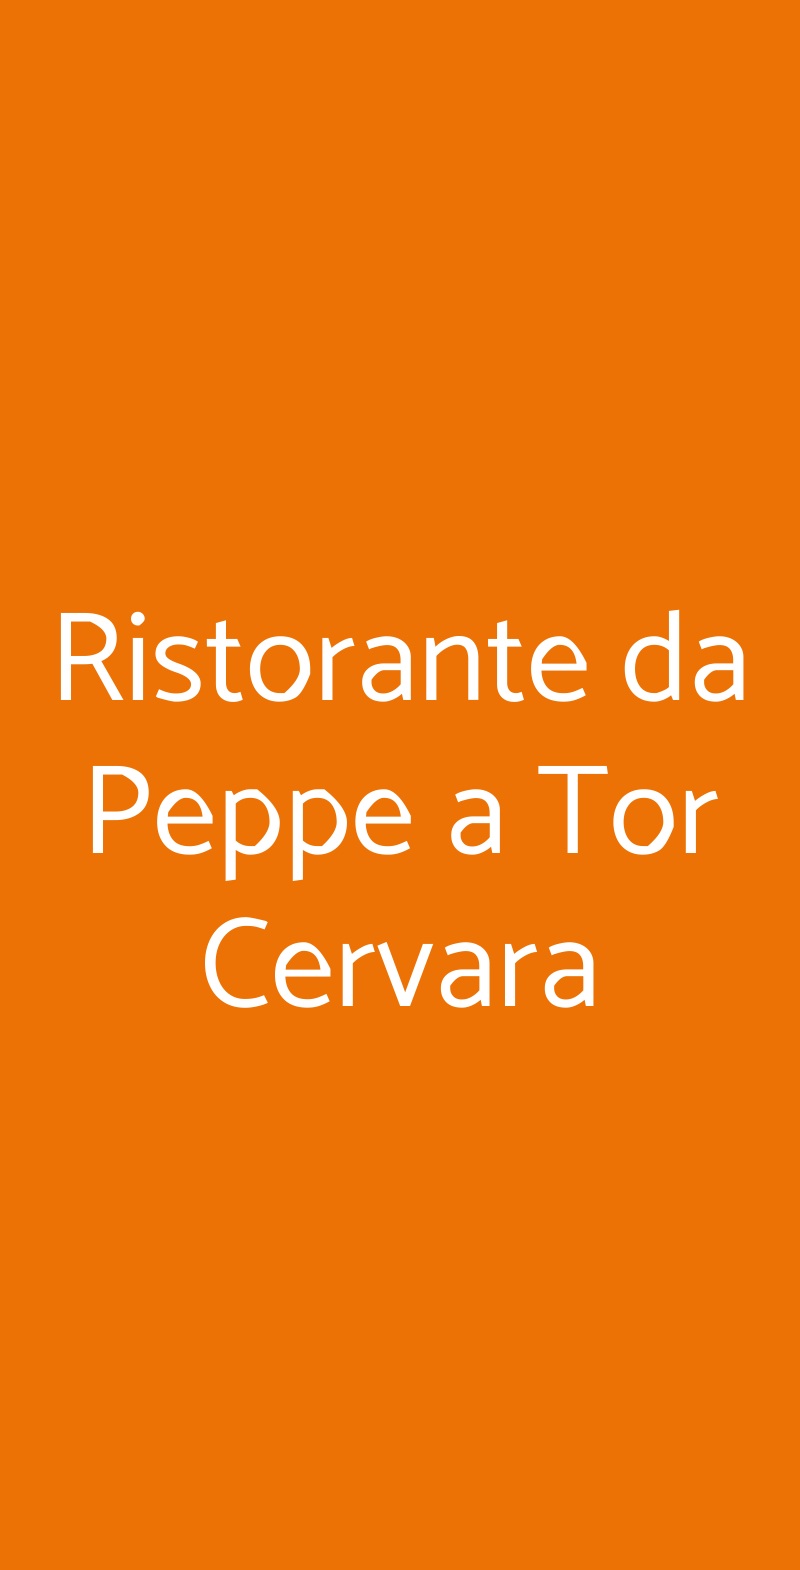 Ristorante da Peppe a Tor Cervara Roma menù 1 pagina